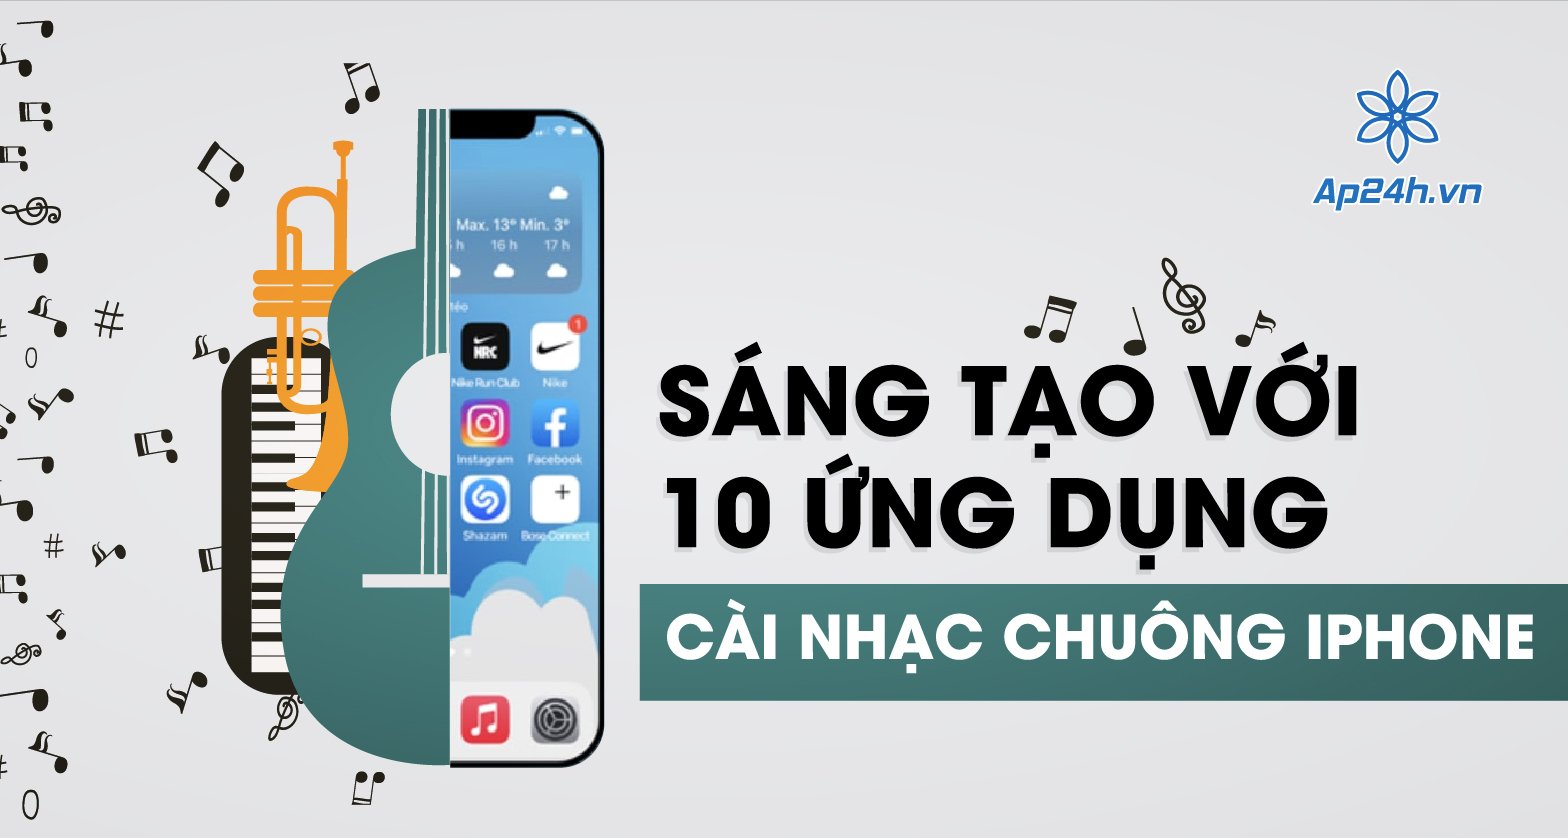 10 ứng dụng cài nhạc chuông cho iphone